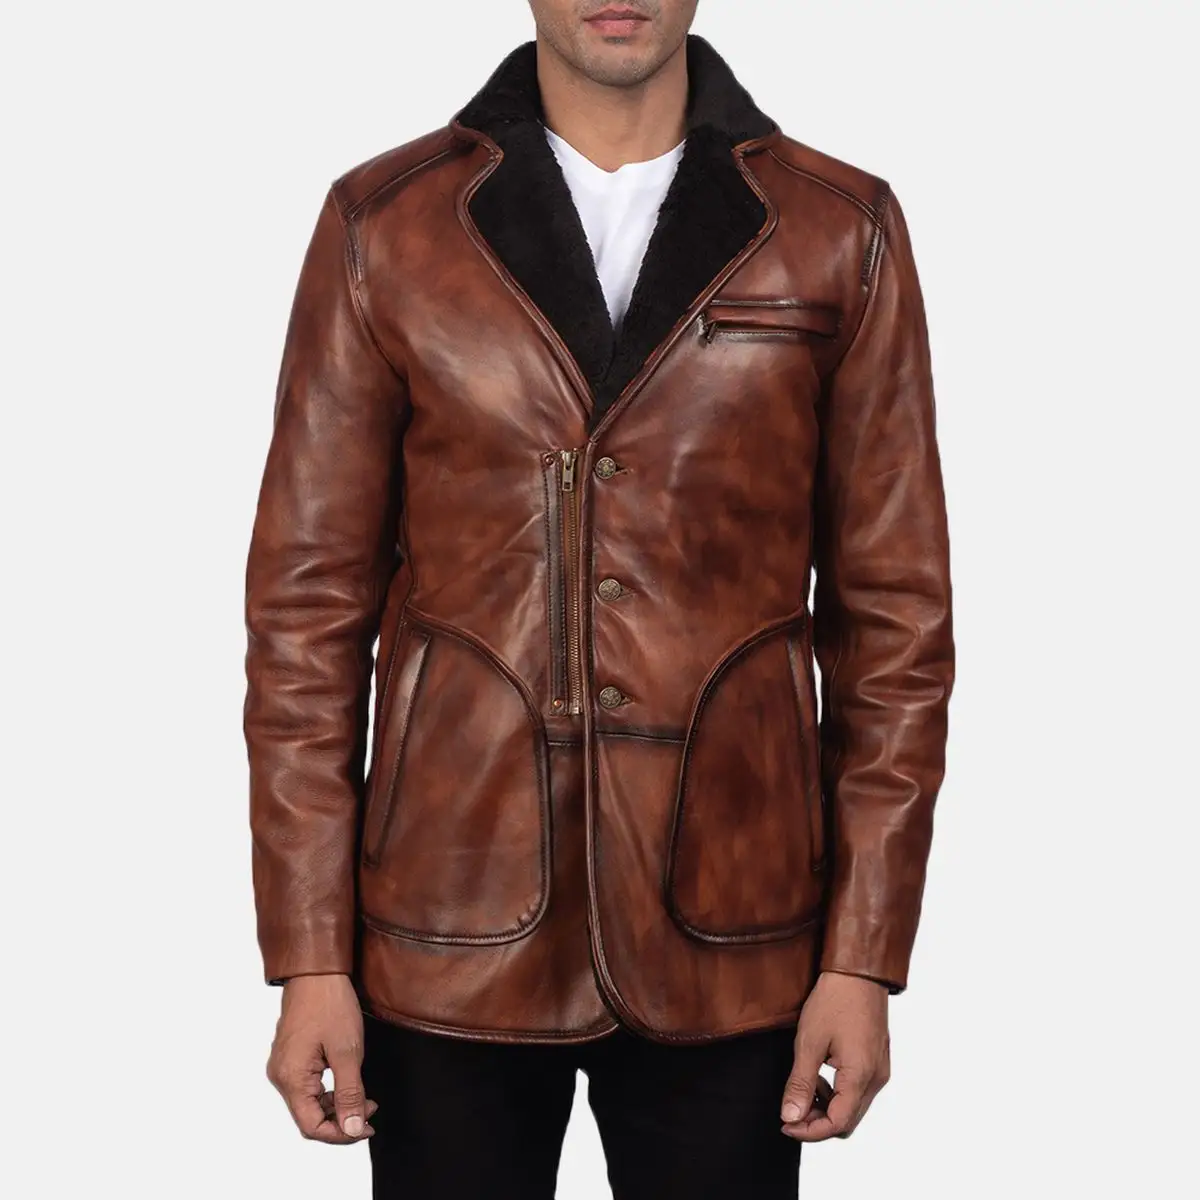 Ur-chaqueta de cuero con botones y media cremallera para hombre, con cuello vuelto chaqueta de piel, color marrón